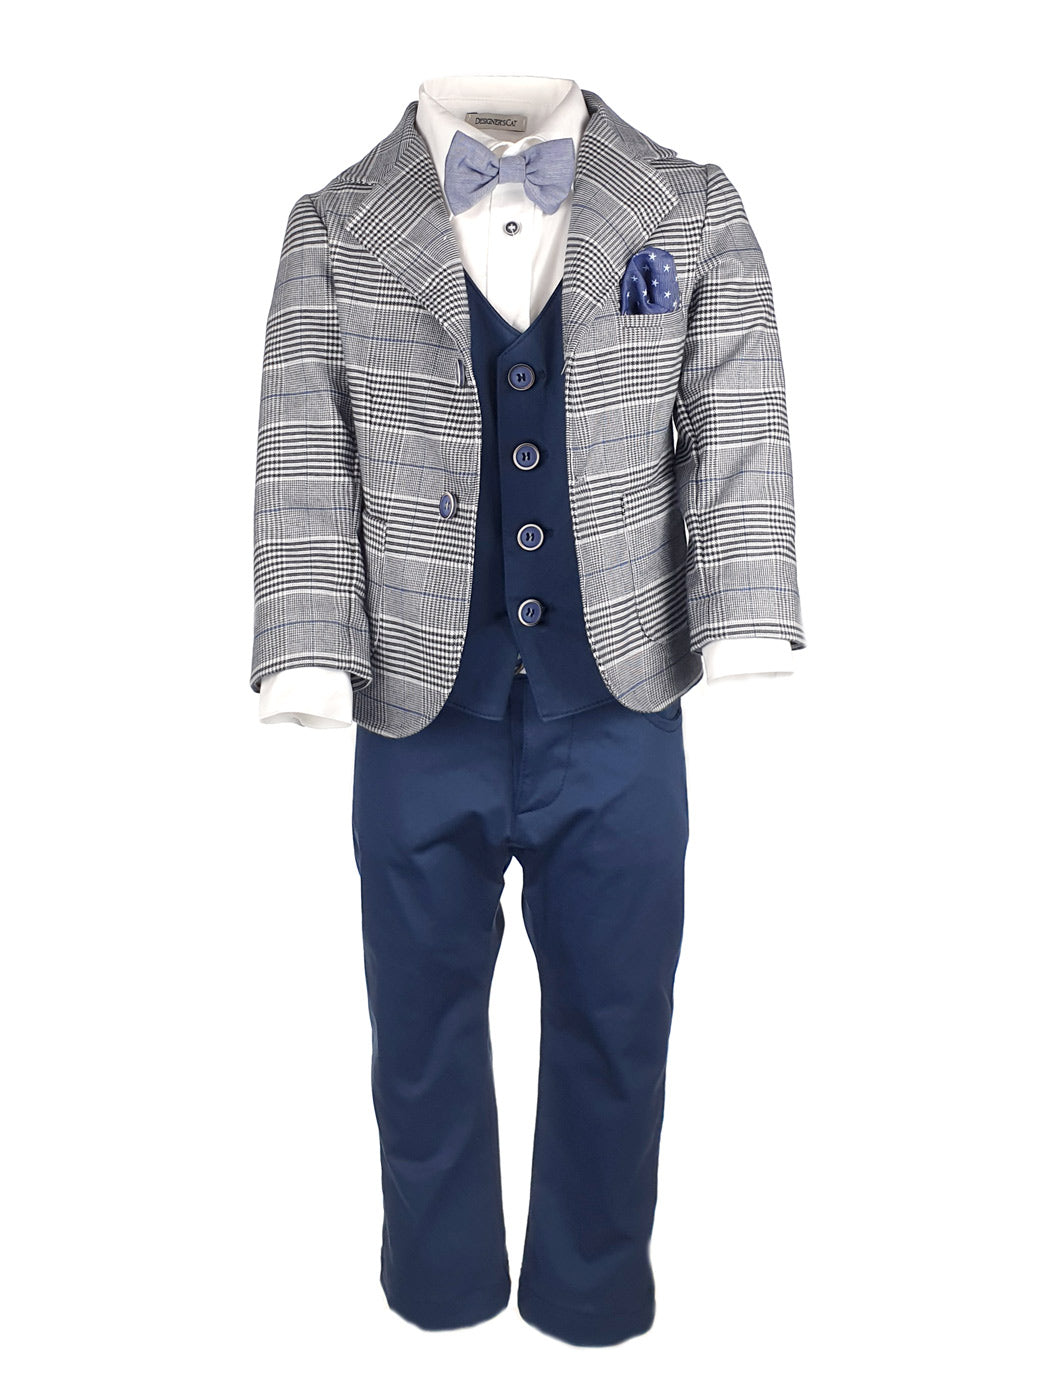 Baptism Cotton Suit set 8pcs for boy - DCSO1192 Grey